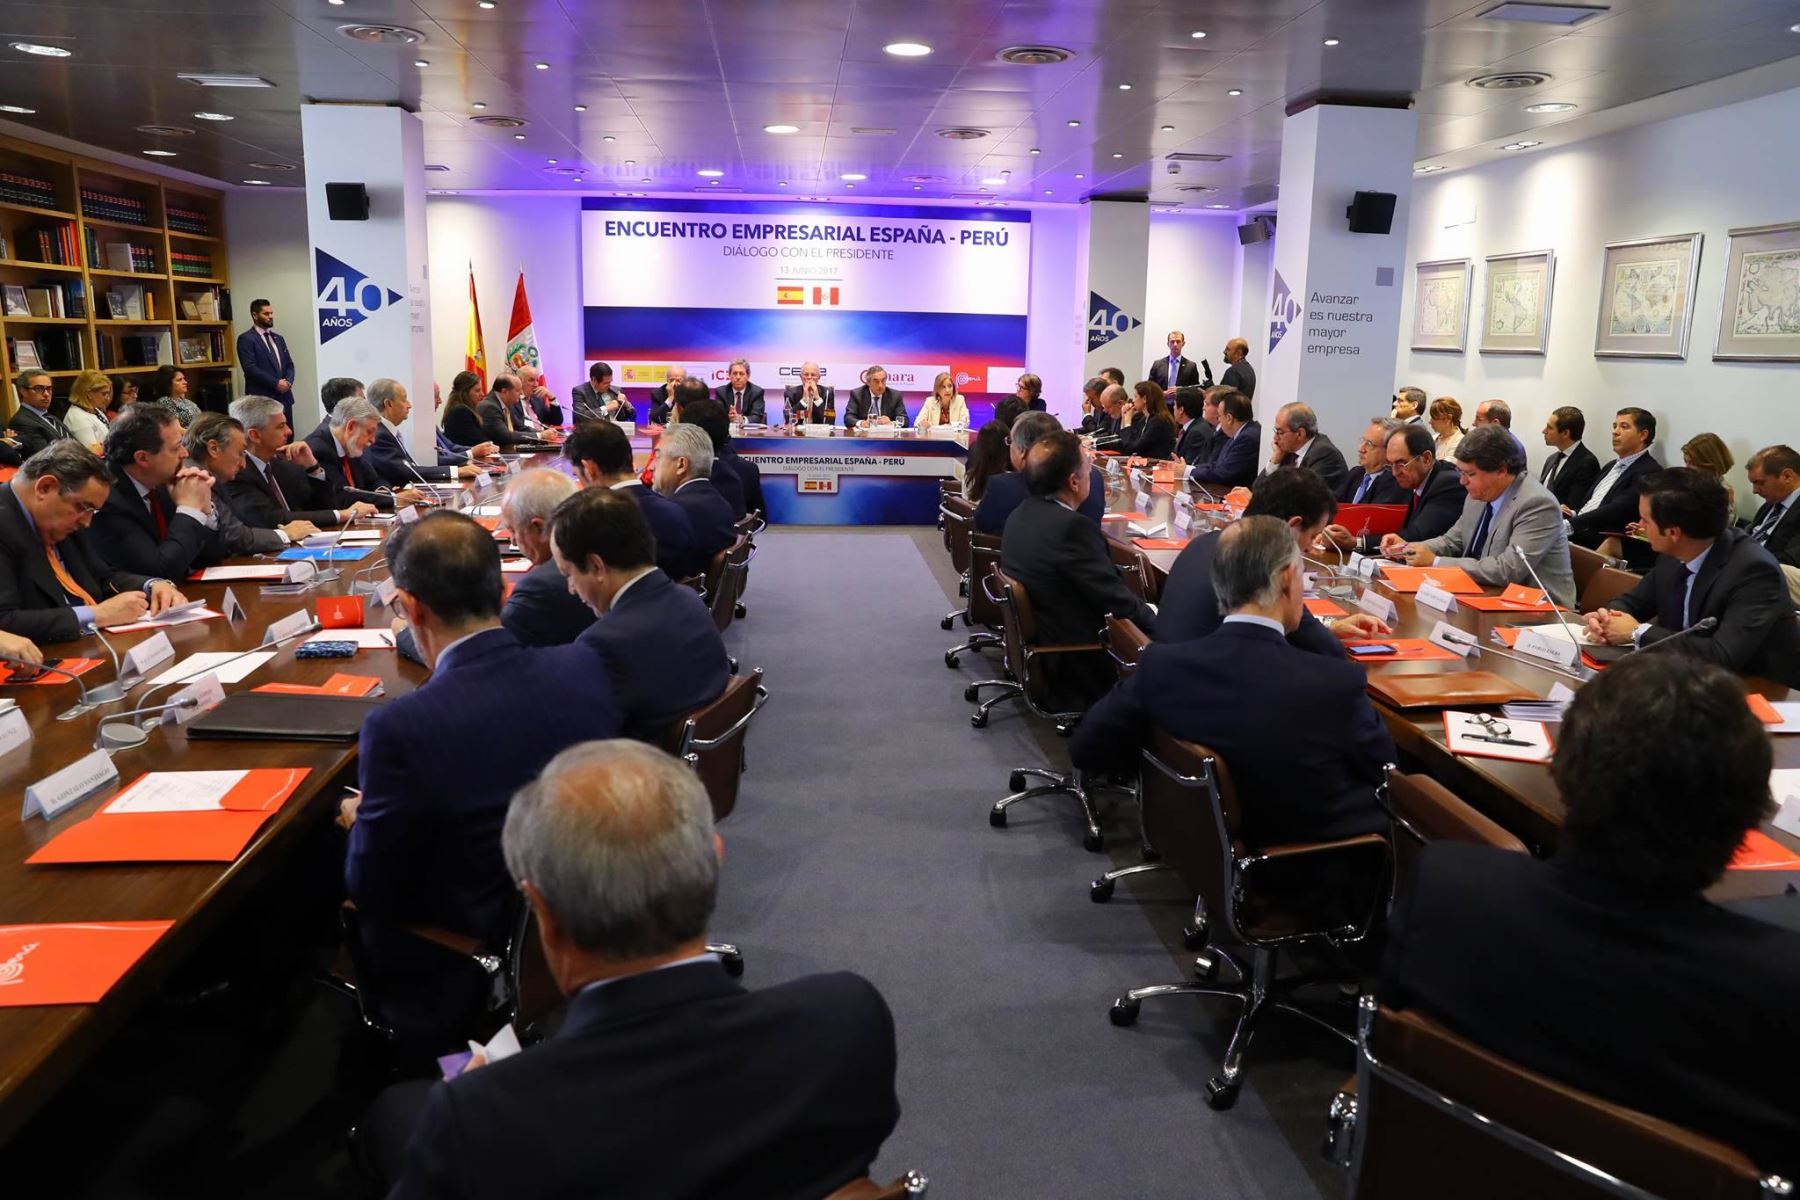 El jefe del Estado, Pedro Pablo Kuczynski, expone durante encuentro empresarial España Perú. Foto: ANDINA/ Andres Valle - Presidencia